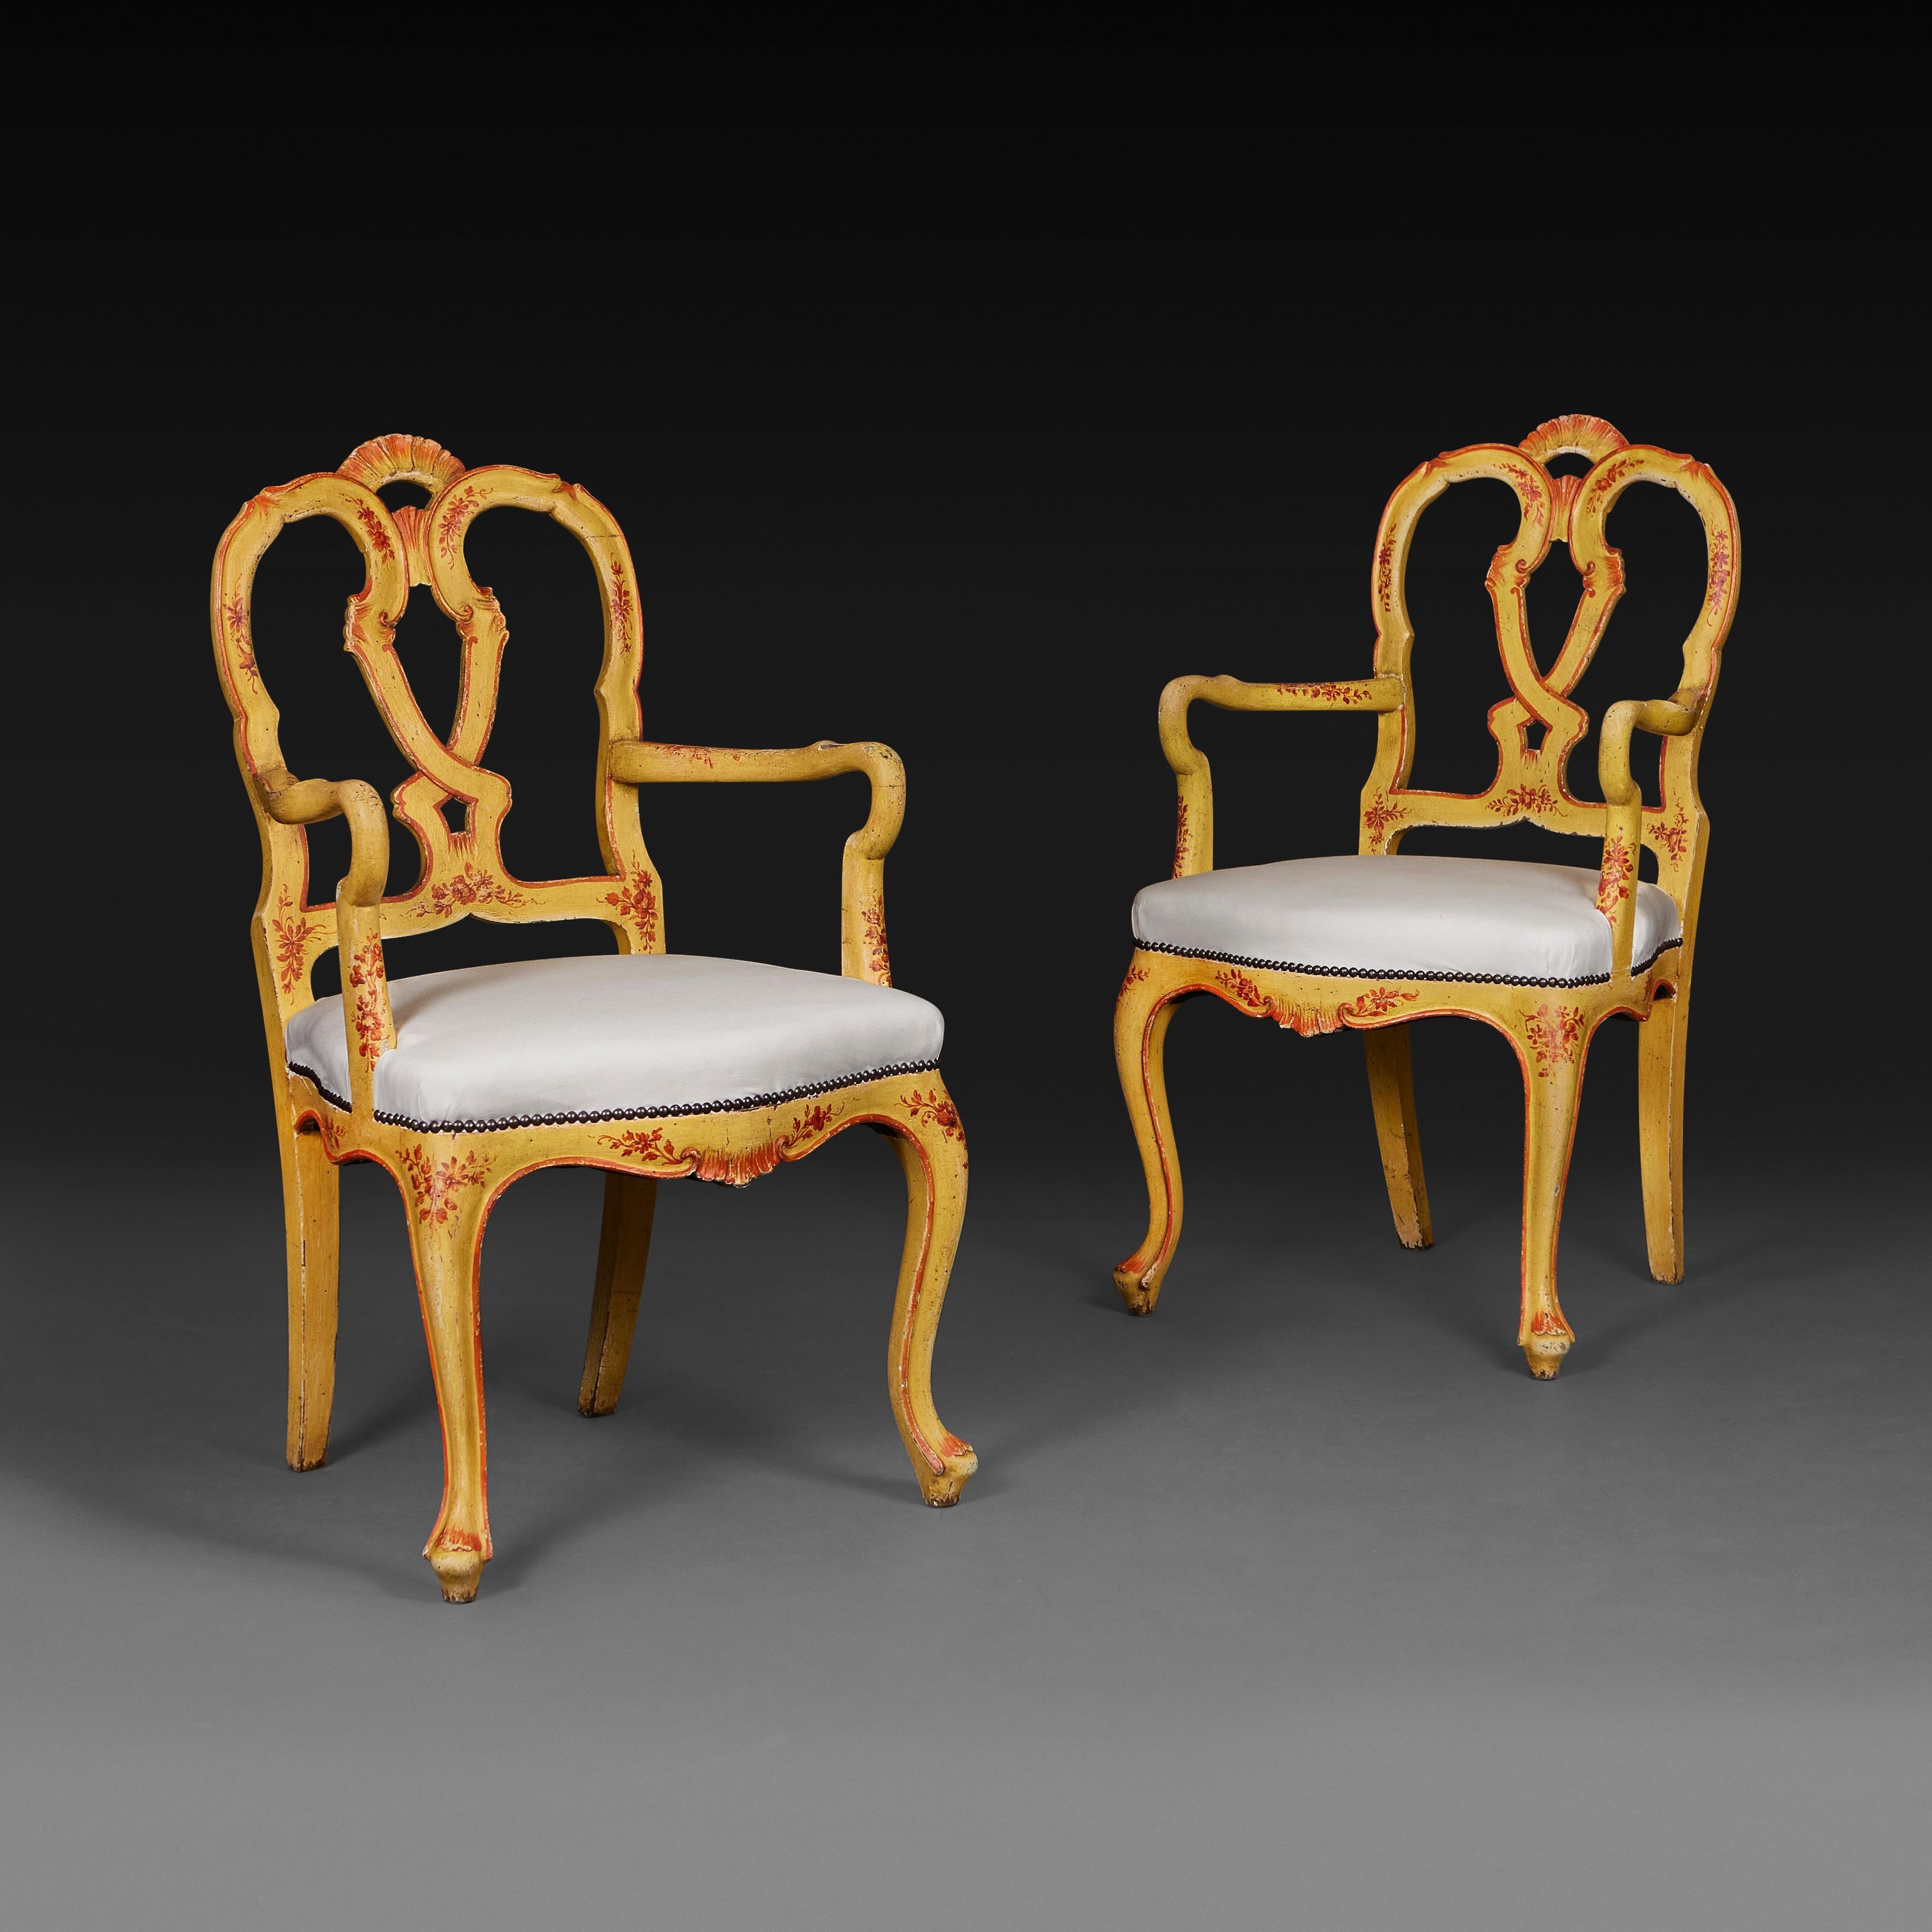 Italien, um 1880

Ein ungewöhnliches Paar venezianischer Sessel aus dem späten neunzehnten Jahrhundert. Die Rahmen sind durchgehend gelb gestrichen und mit roten Details versehen, die Rückenlehne hat einen verschlungenen Knoten in der Mitte und ein